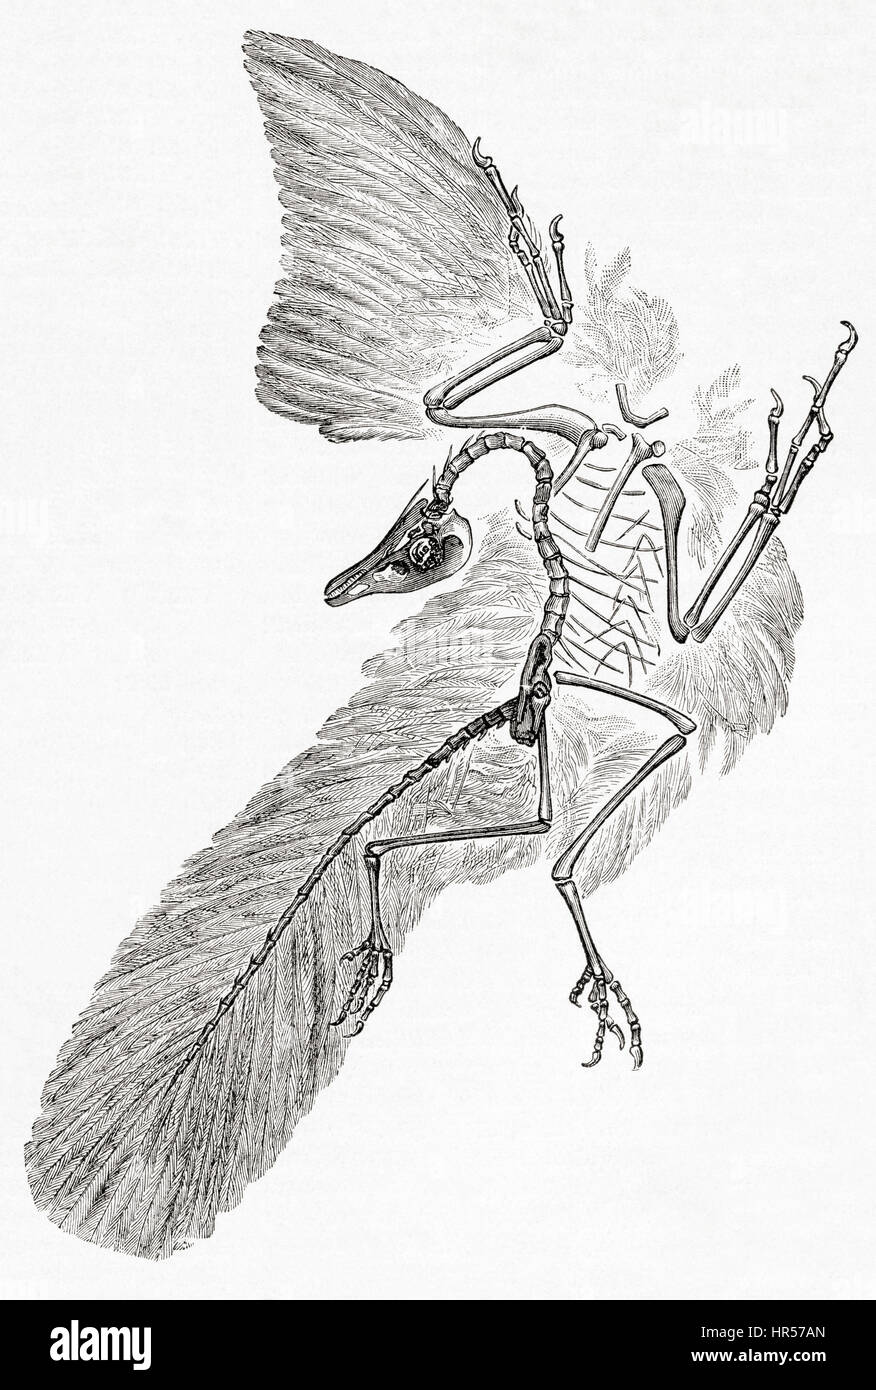 Ein Archaeopteryx gefiederten Gattung vogelähnliche Dinosaurier, die Übergangszeit zwischen nicht-Vogel ist, Dinosaurier und Vögel.  Aus Meyers Lexikon veröffentlicht 1927. Stockfoto